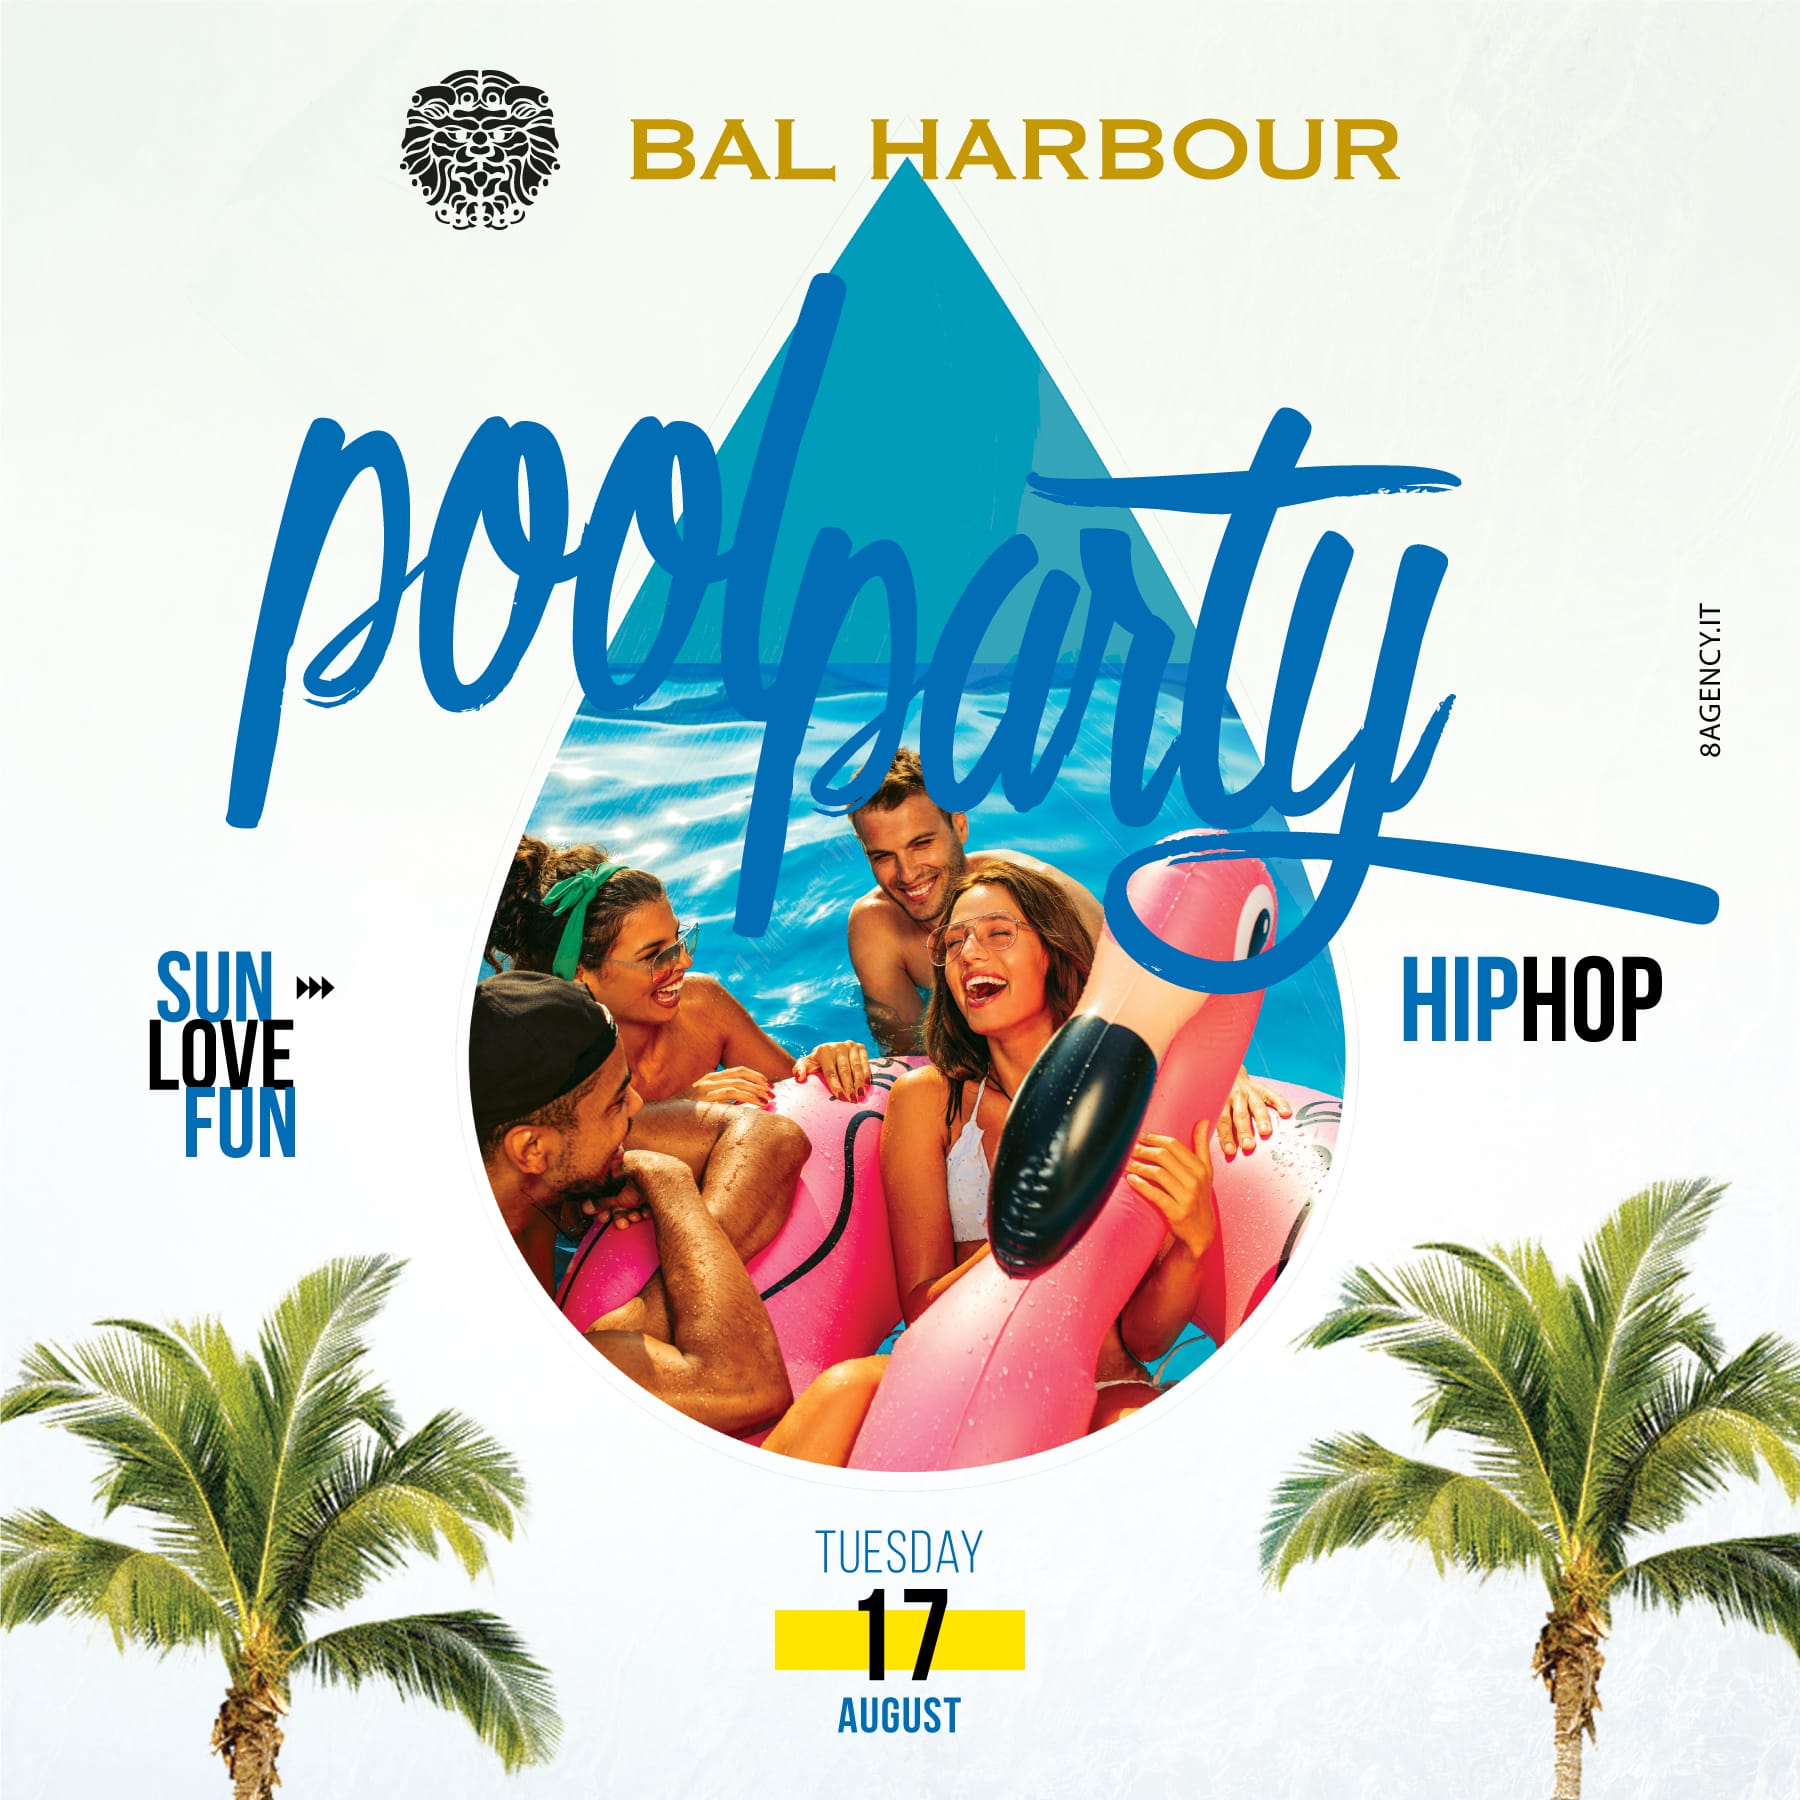 Pool Party Martedì 17 agosto Bal Harbour. Feste in Piscina San Teodoro.